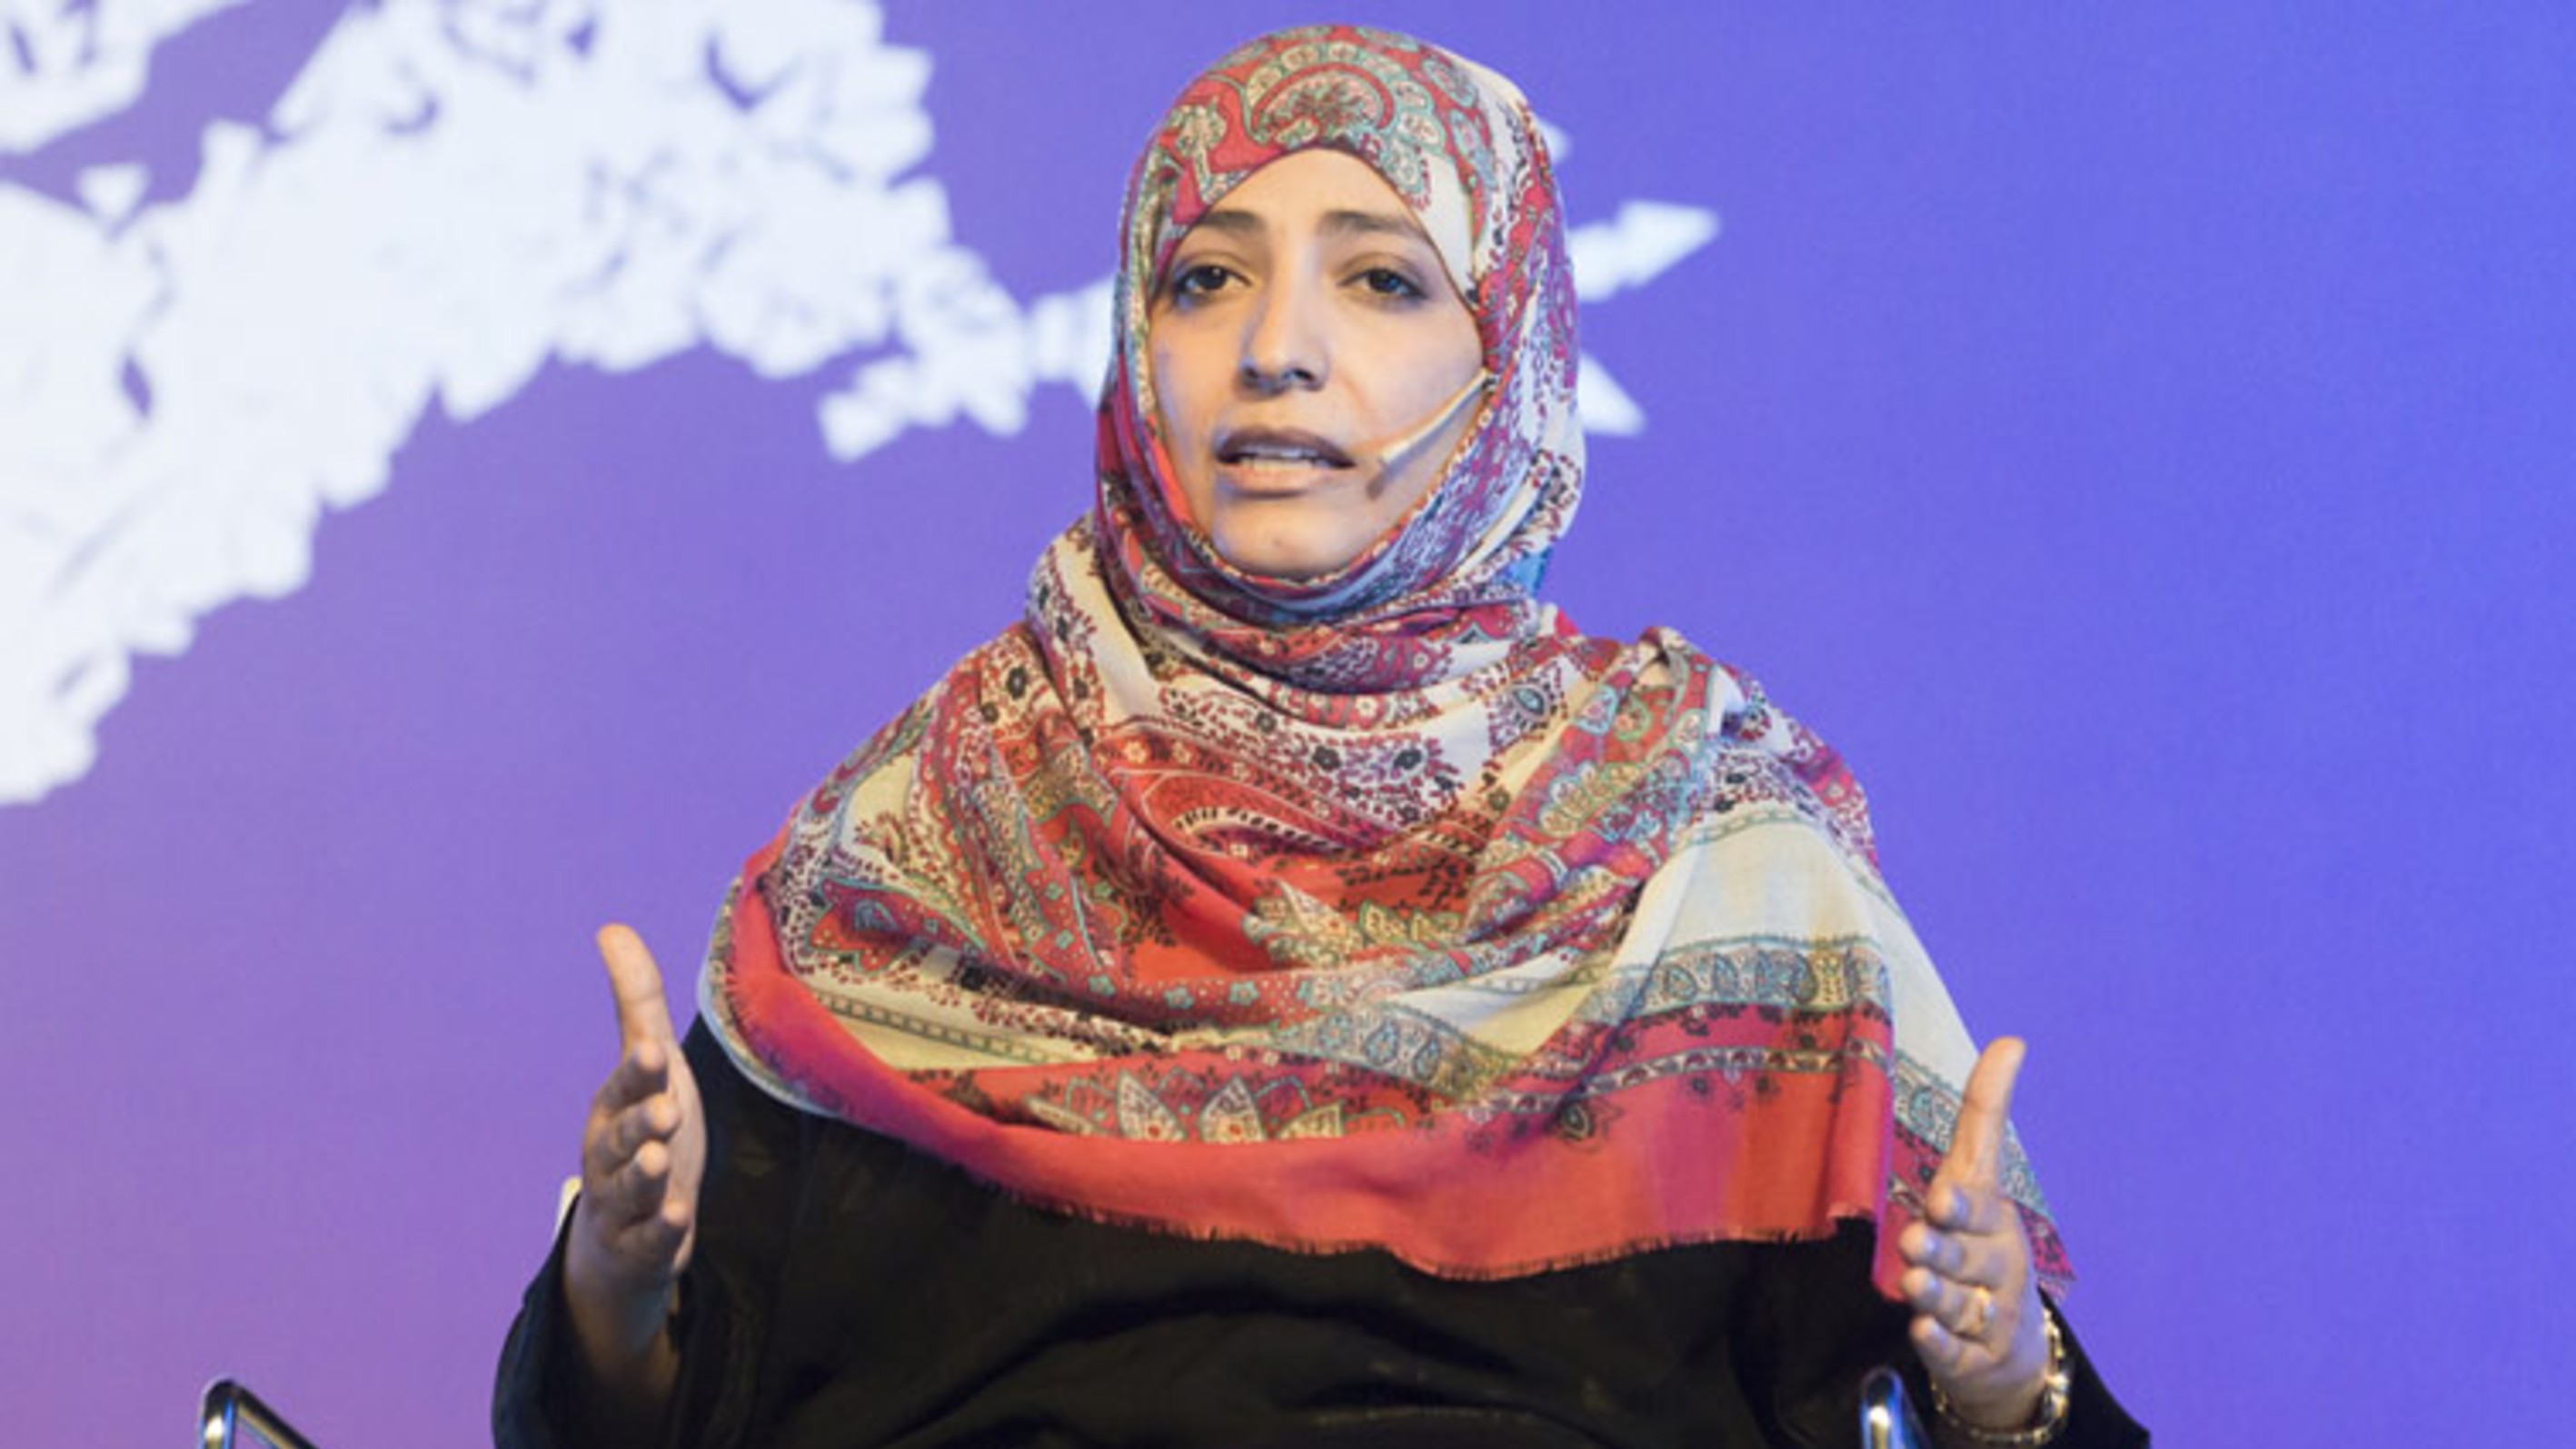 حوار الناشطة الحائزة على جائزة نوبل للسلام توكل كرمان مع موقع الجزيرة نت 